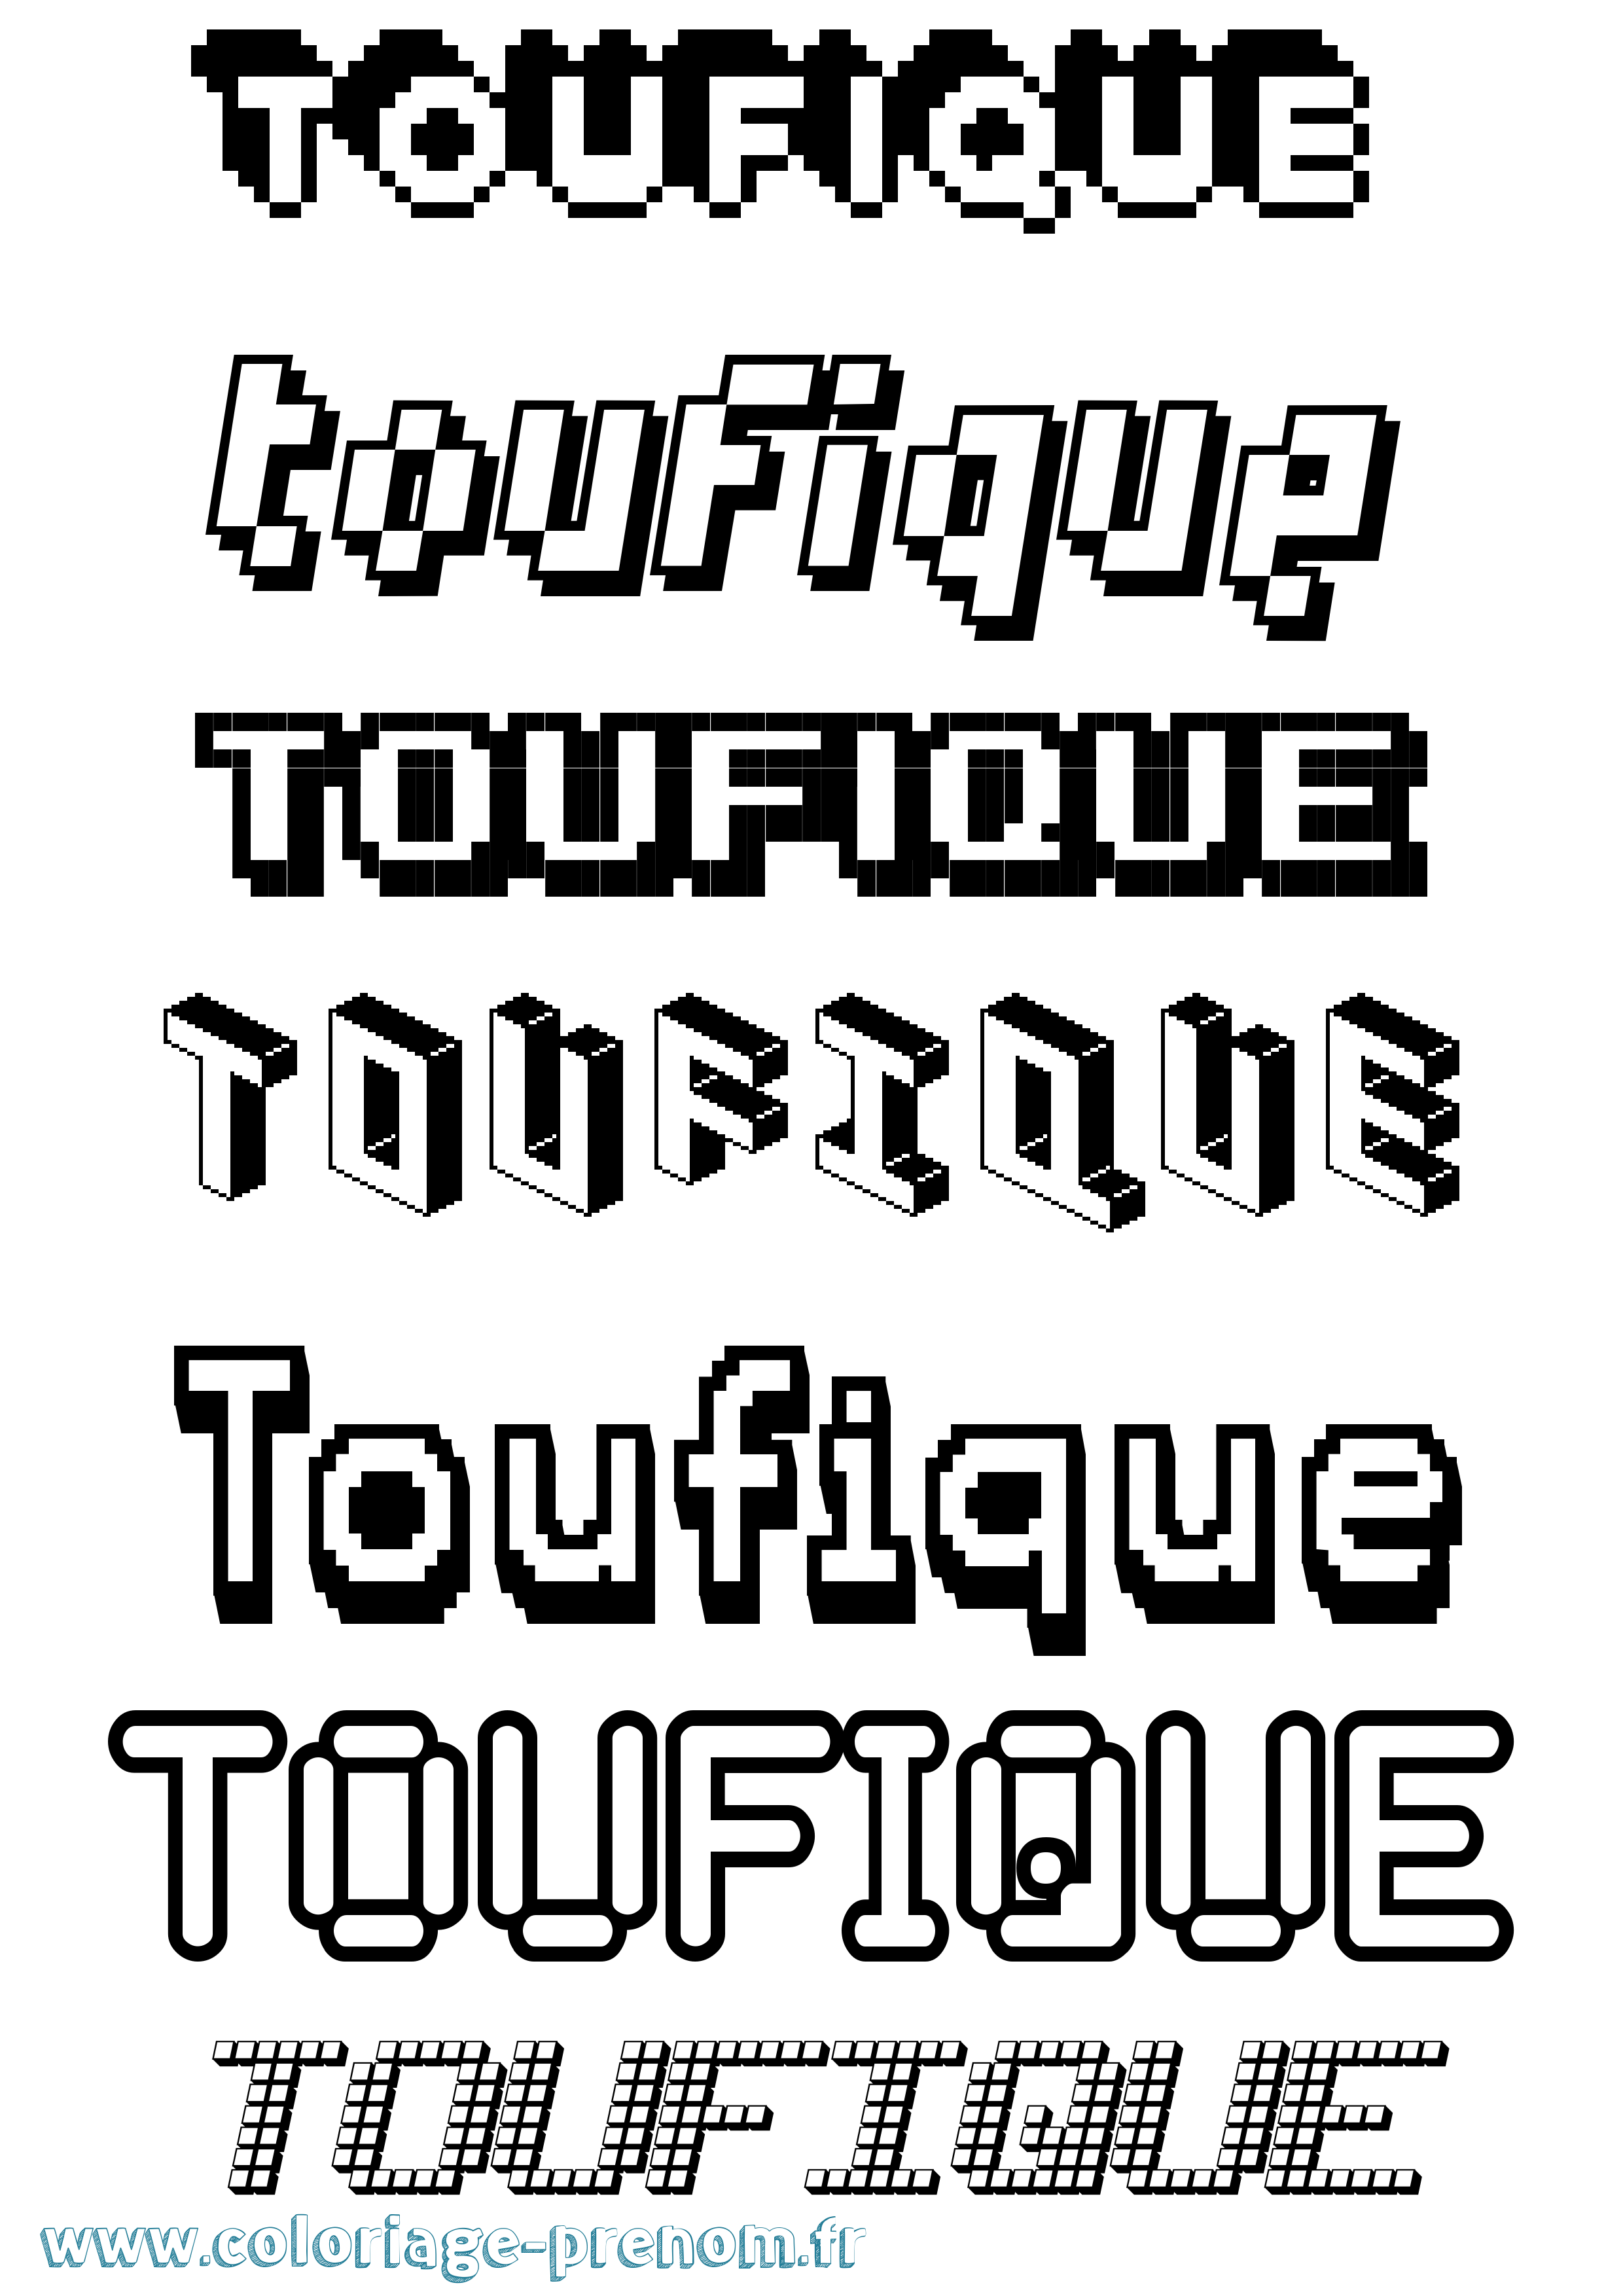 Coloriage prénom Toufique Pixel